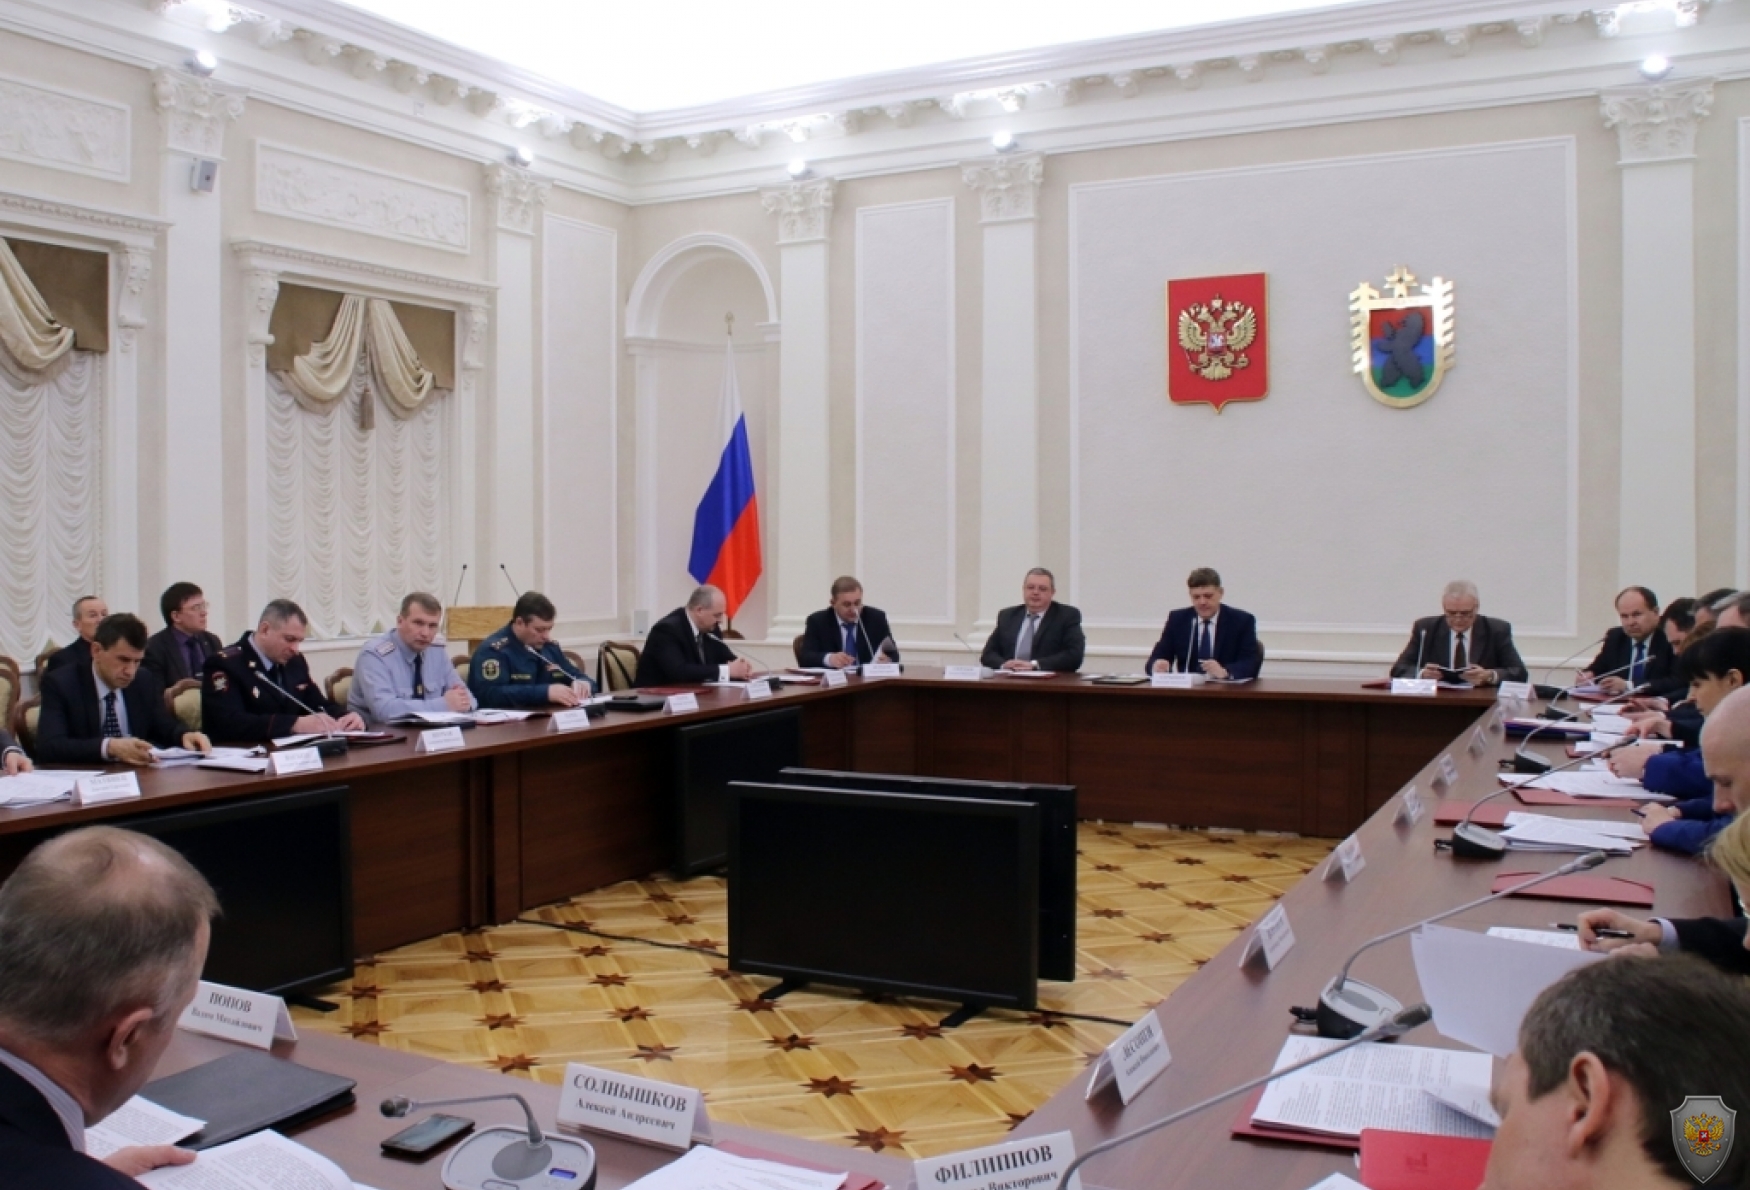 Зал заседаний Правительства Республики Карелия